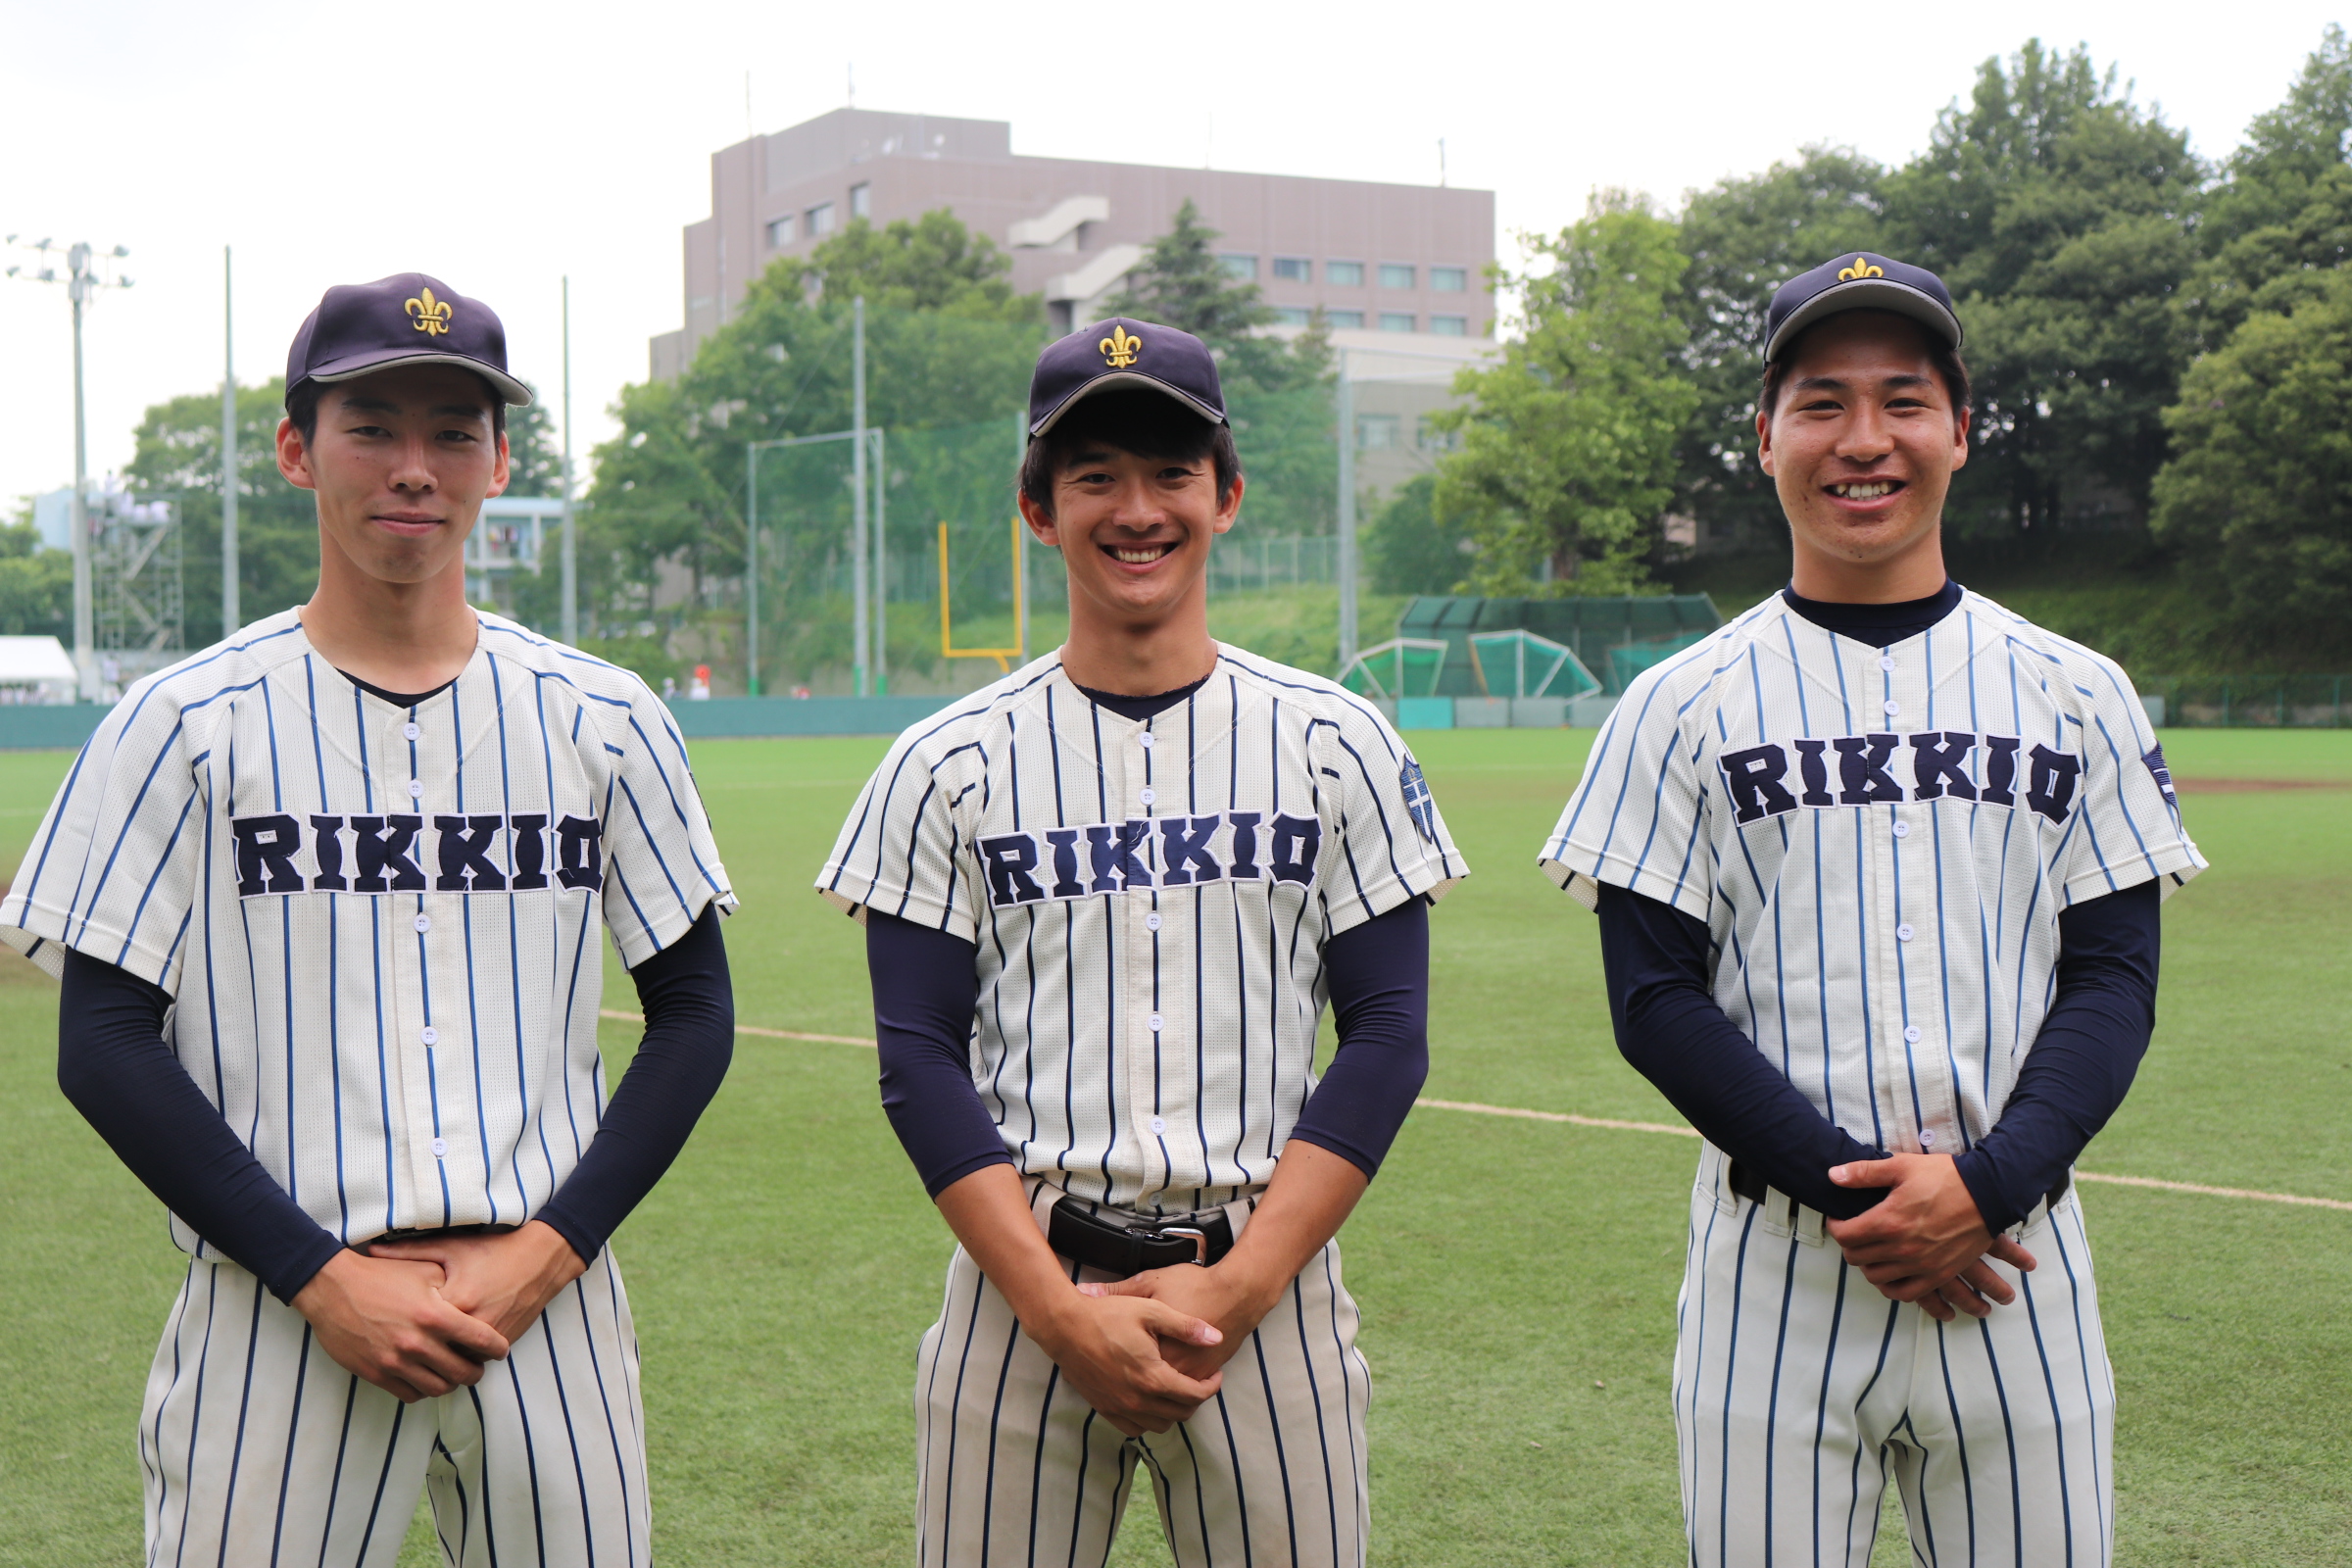 東京六大学準硬式野球連盟